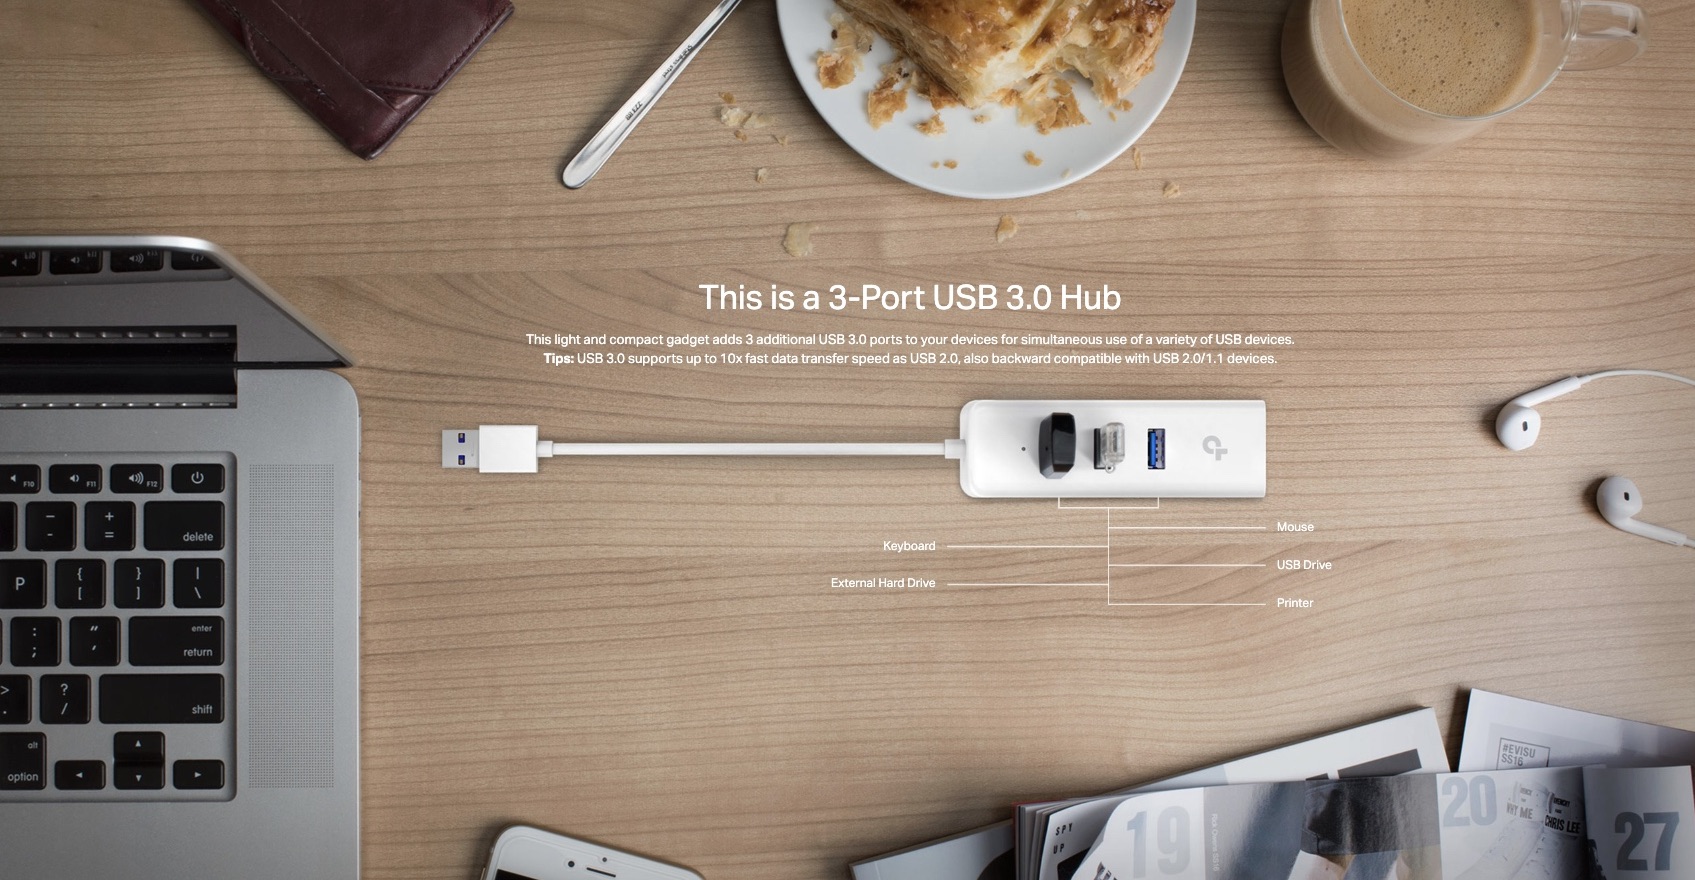 TP-Link-UE330-USB-3.0-3-Port-Hub-And-Gigabit-Ethernet-Adapter-2-in-1-USB-Adapter-Description-2